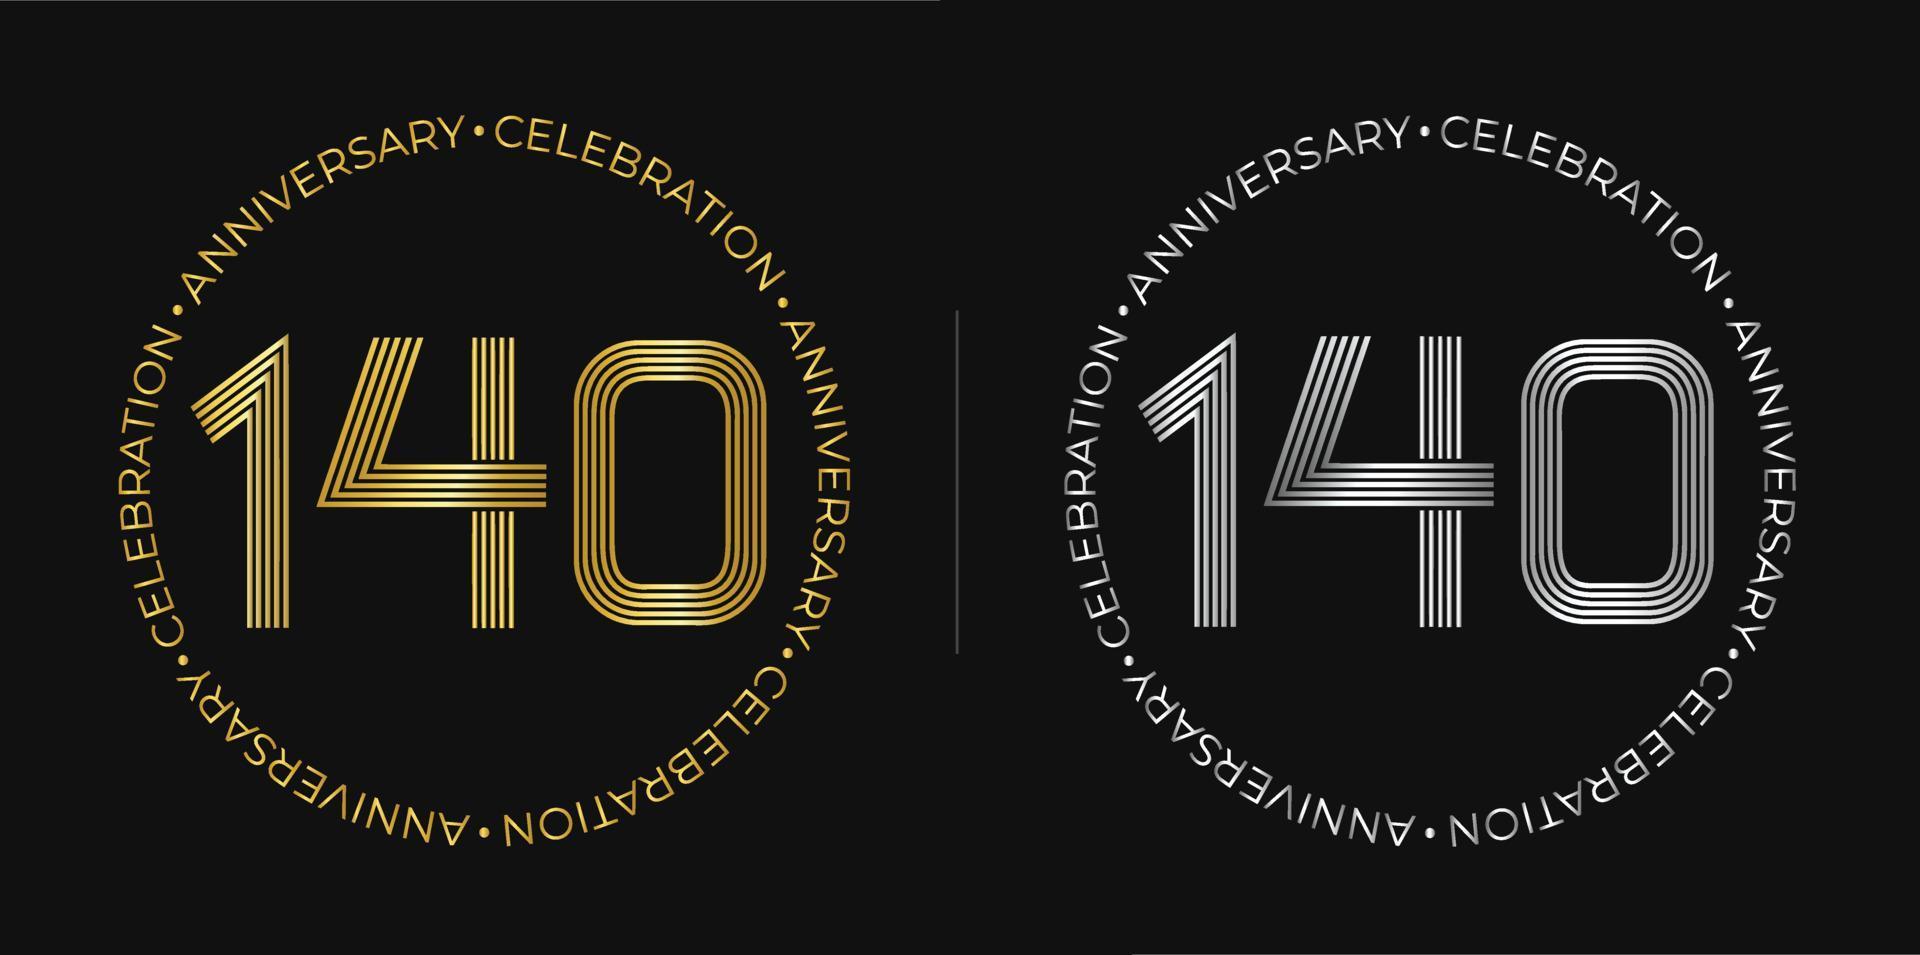 140e anniversaire. bannière de célébration d'anniversaire de cent quarante ans aux couleurs dorées et argentées. logo circulaire avec des chiffres originaux aux lignes élégantes. vecteur